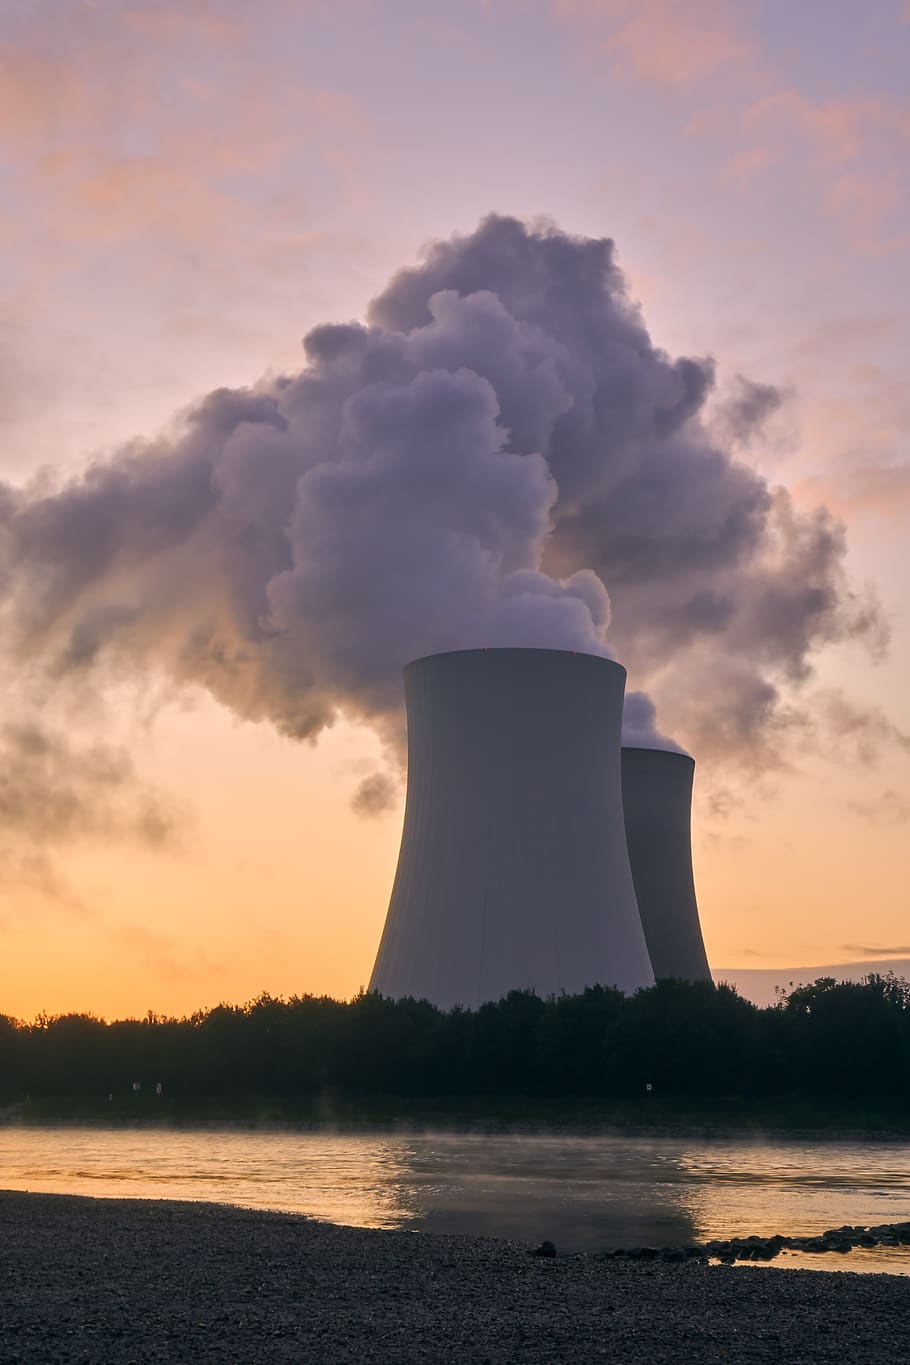 planta de energía nuclear, torre de enfriamiento, amanecer, hora azul, estado de ánimo, rin, río, marea baja, energía nuclear, energía atómica